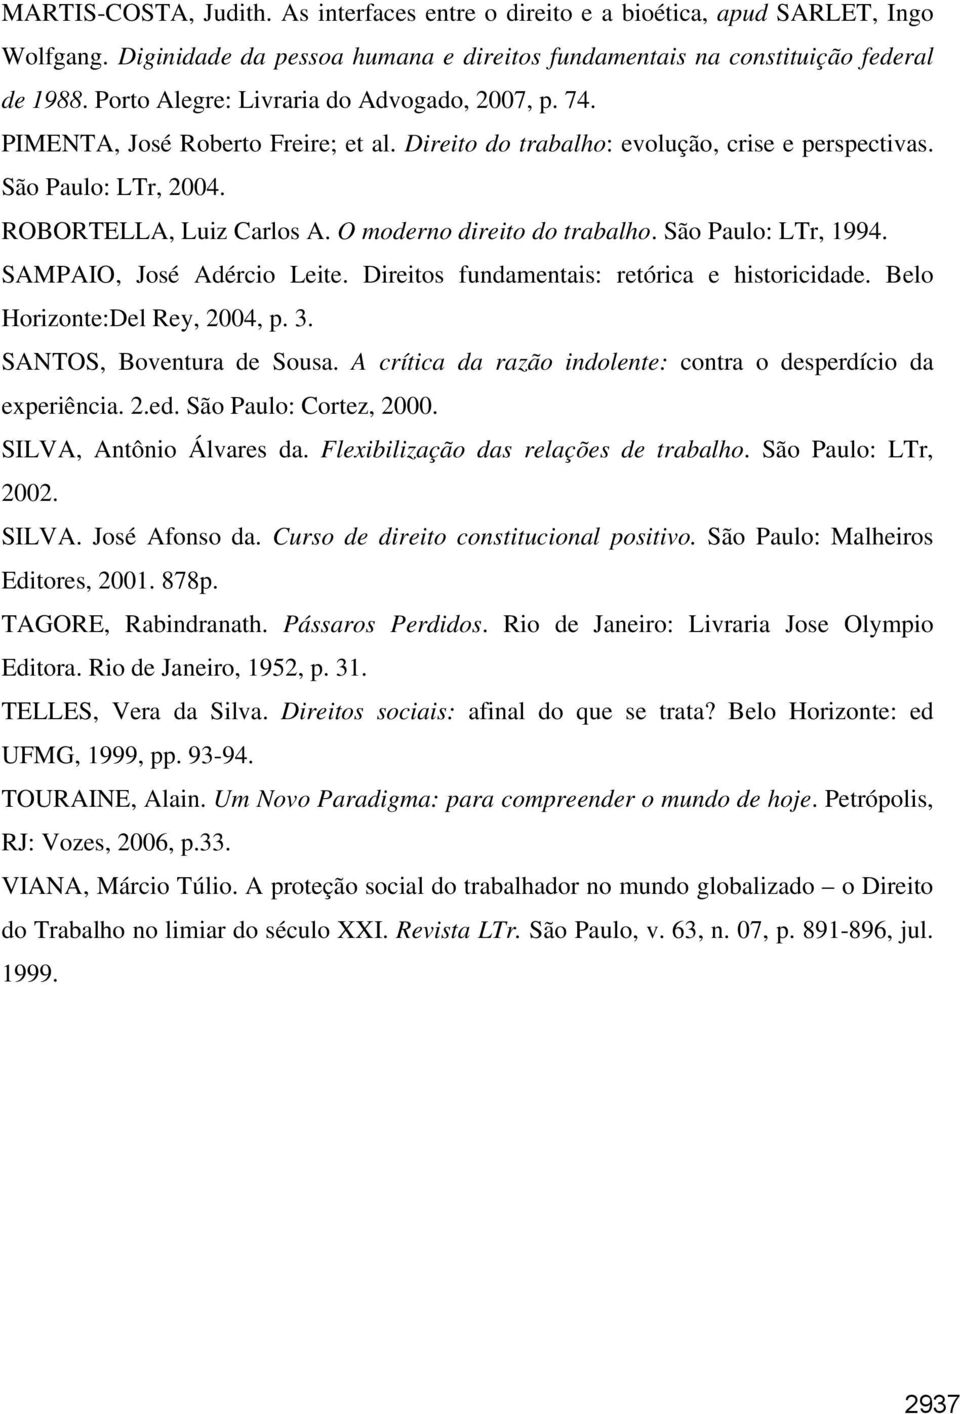 O moderno direito do trabalho. São Paulo: LTr, 1994. SAMPAIO, José Adércio Leite. Direitos fundamentais: retórica e historicidade. Belo Horizonte:Del Rey, 2004, p. 3. SANTOS, Boventura de Sousa.